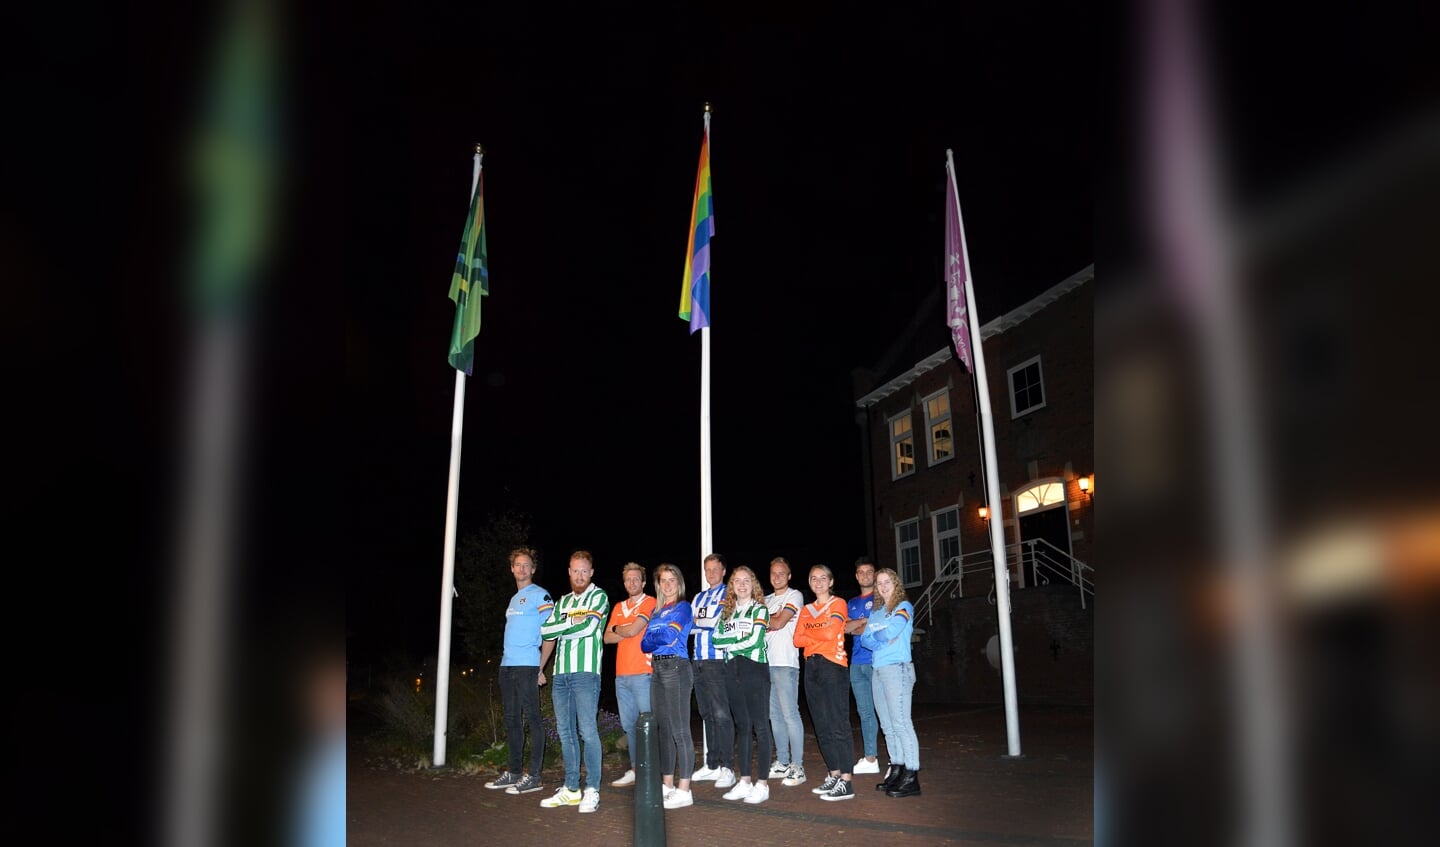 Gezamenlijk poseren onder de regenboogvlag en de Achterhoekse vlag met regenboogaccenten. Foto: Lisa Wellink